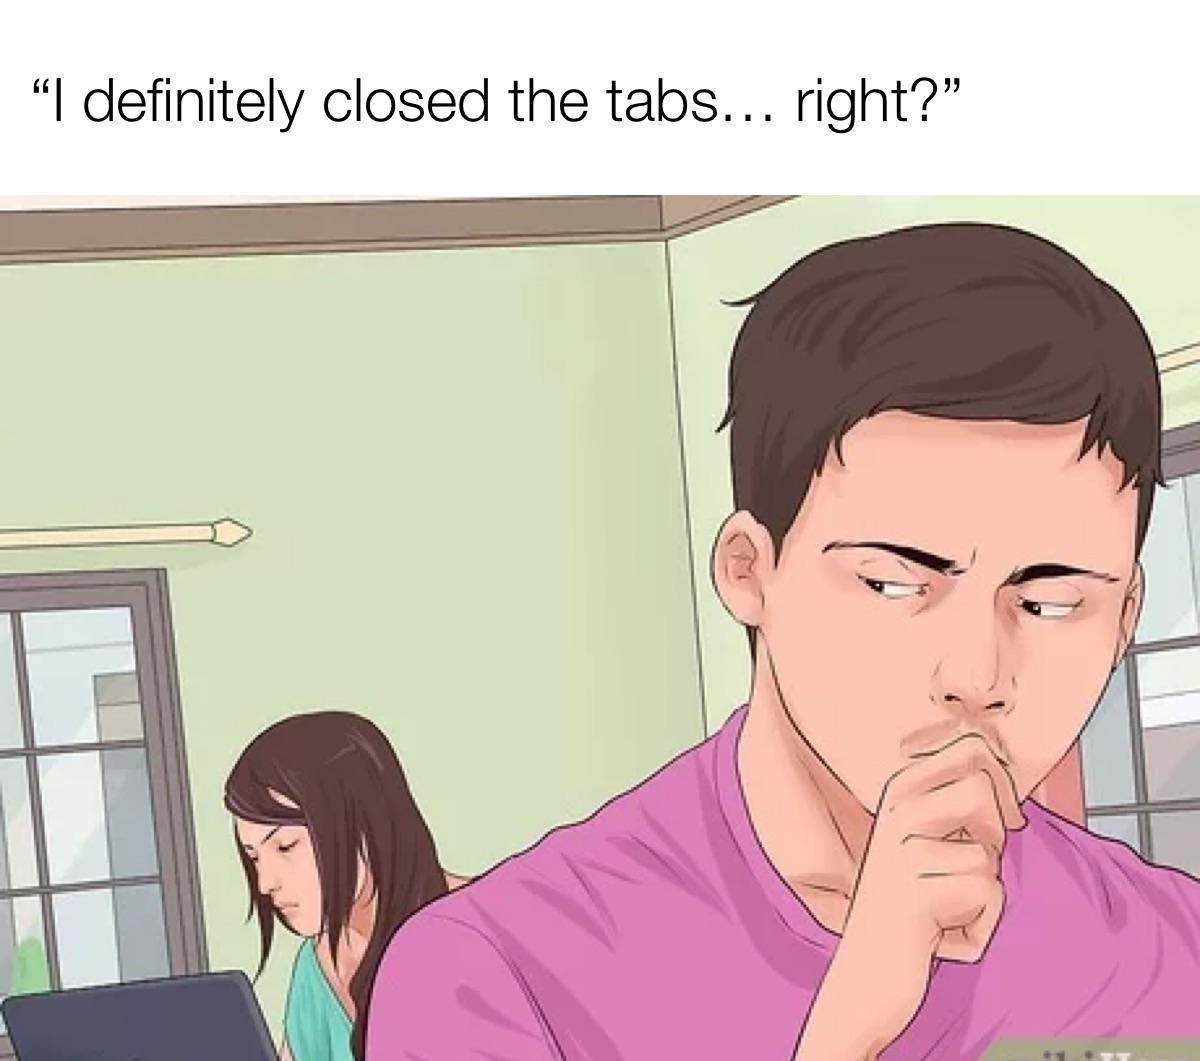 cartoon - "I definitely closed the tabs... right?"